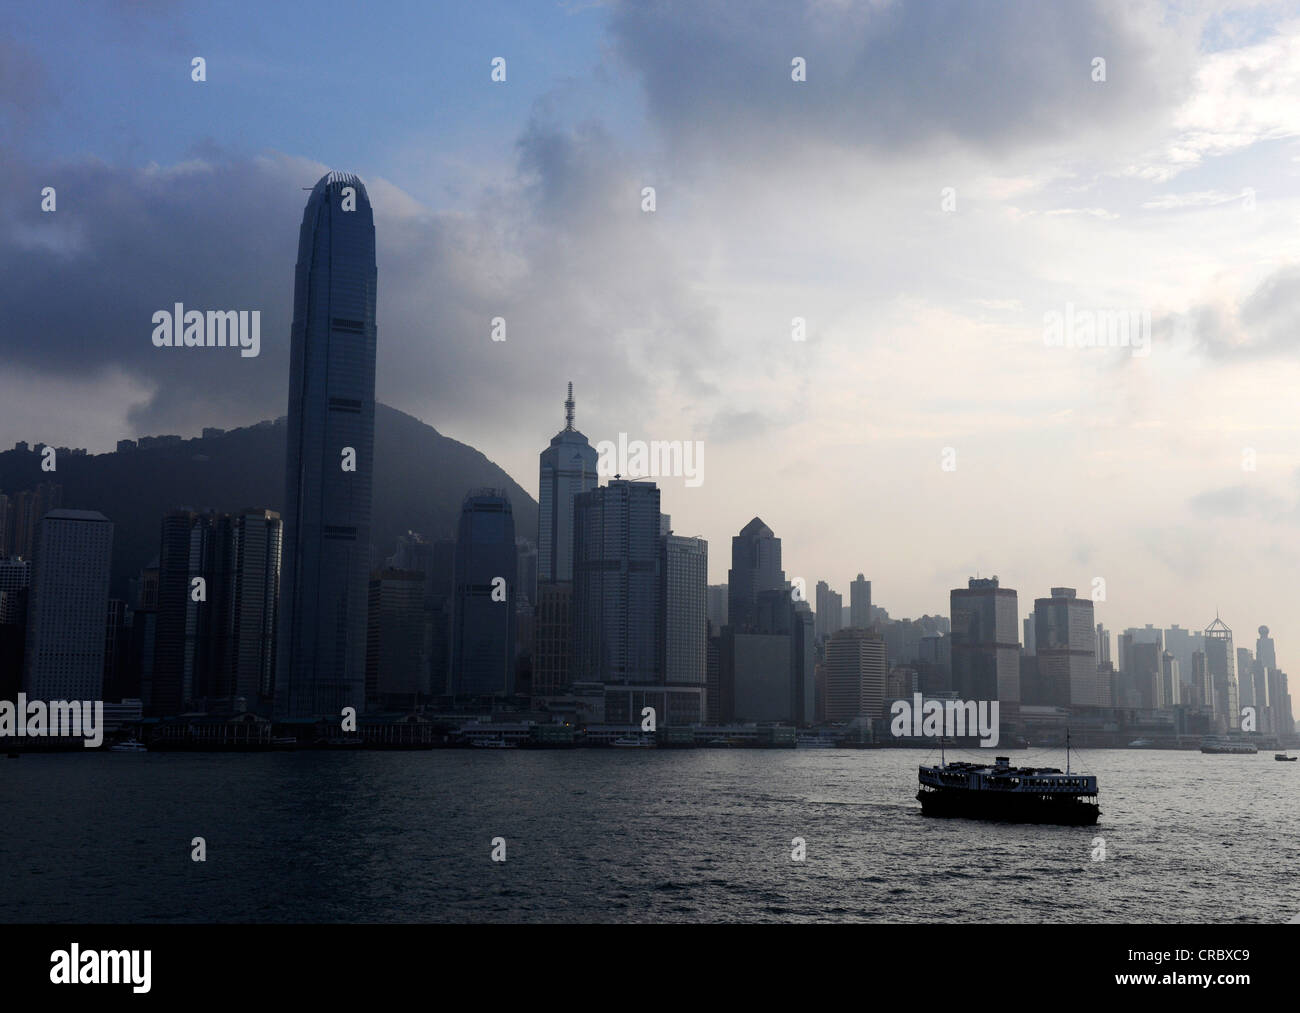 Hong Kong skyline, boat, China, Asia Stock Photo